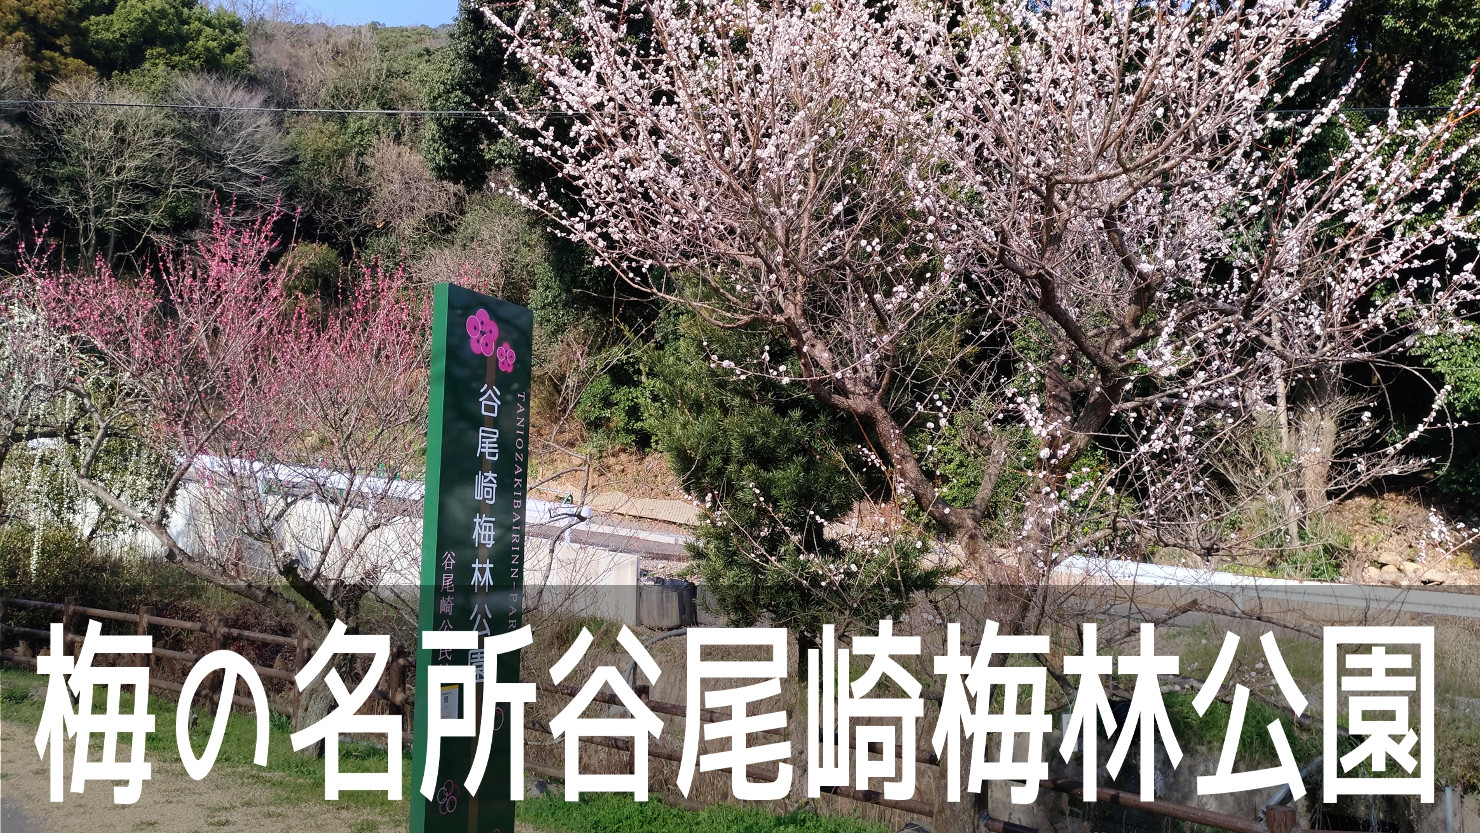 剣豪・宮本武蔵ゆかりの座禅石も見られる、梅の名所「谷尾崎梅林公園」